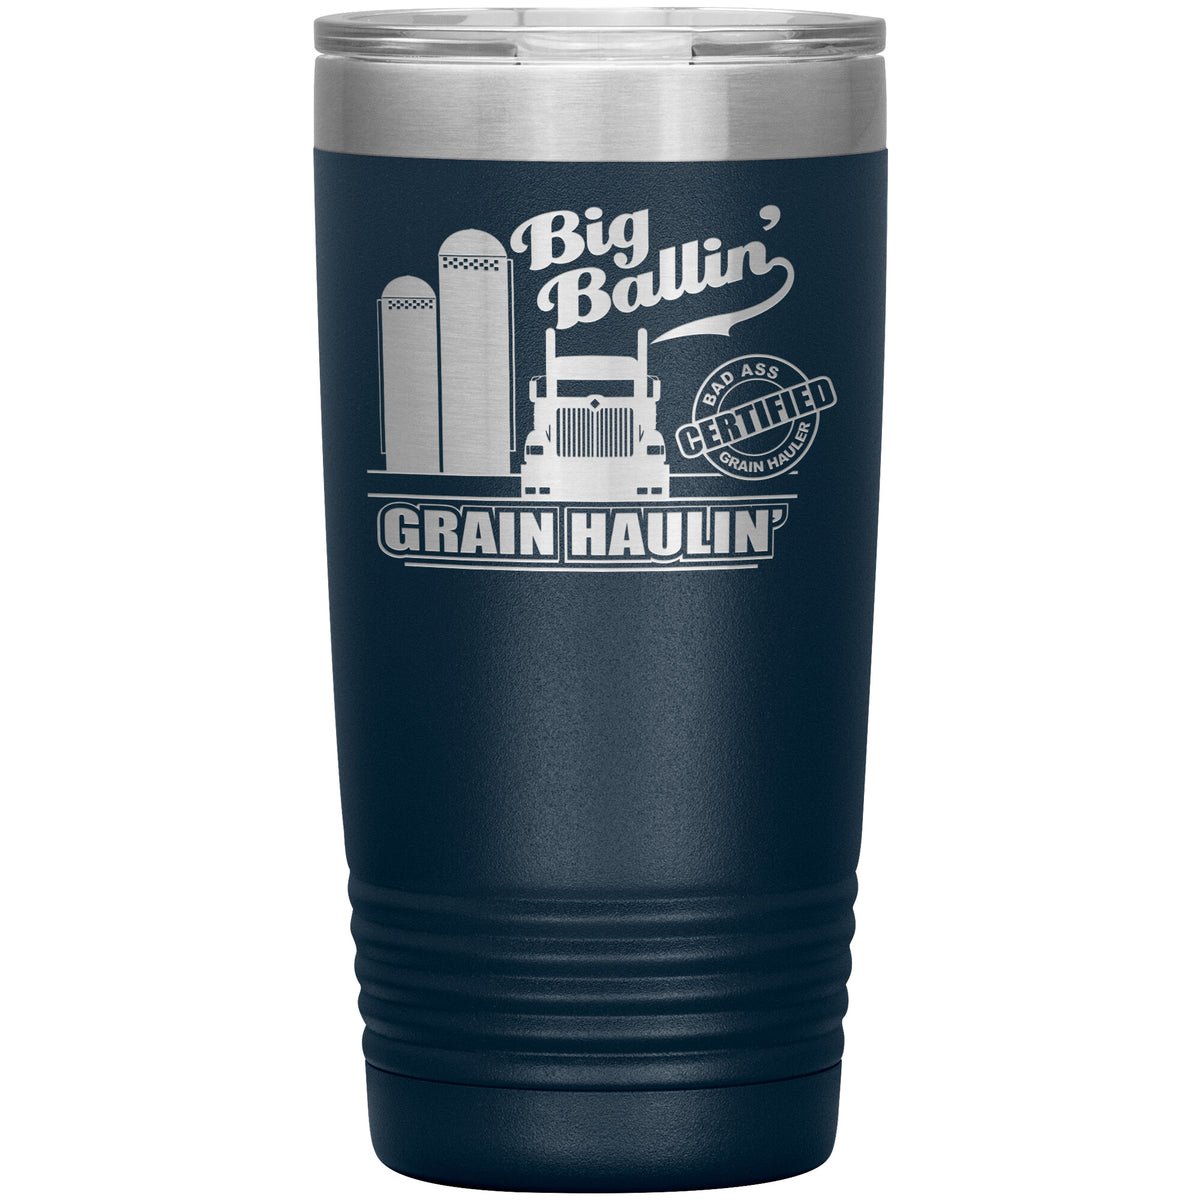 Big Ballin' Grain Haulin' 9900 20oz Tumbler